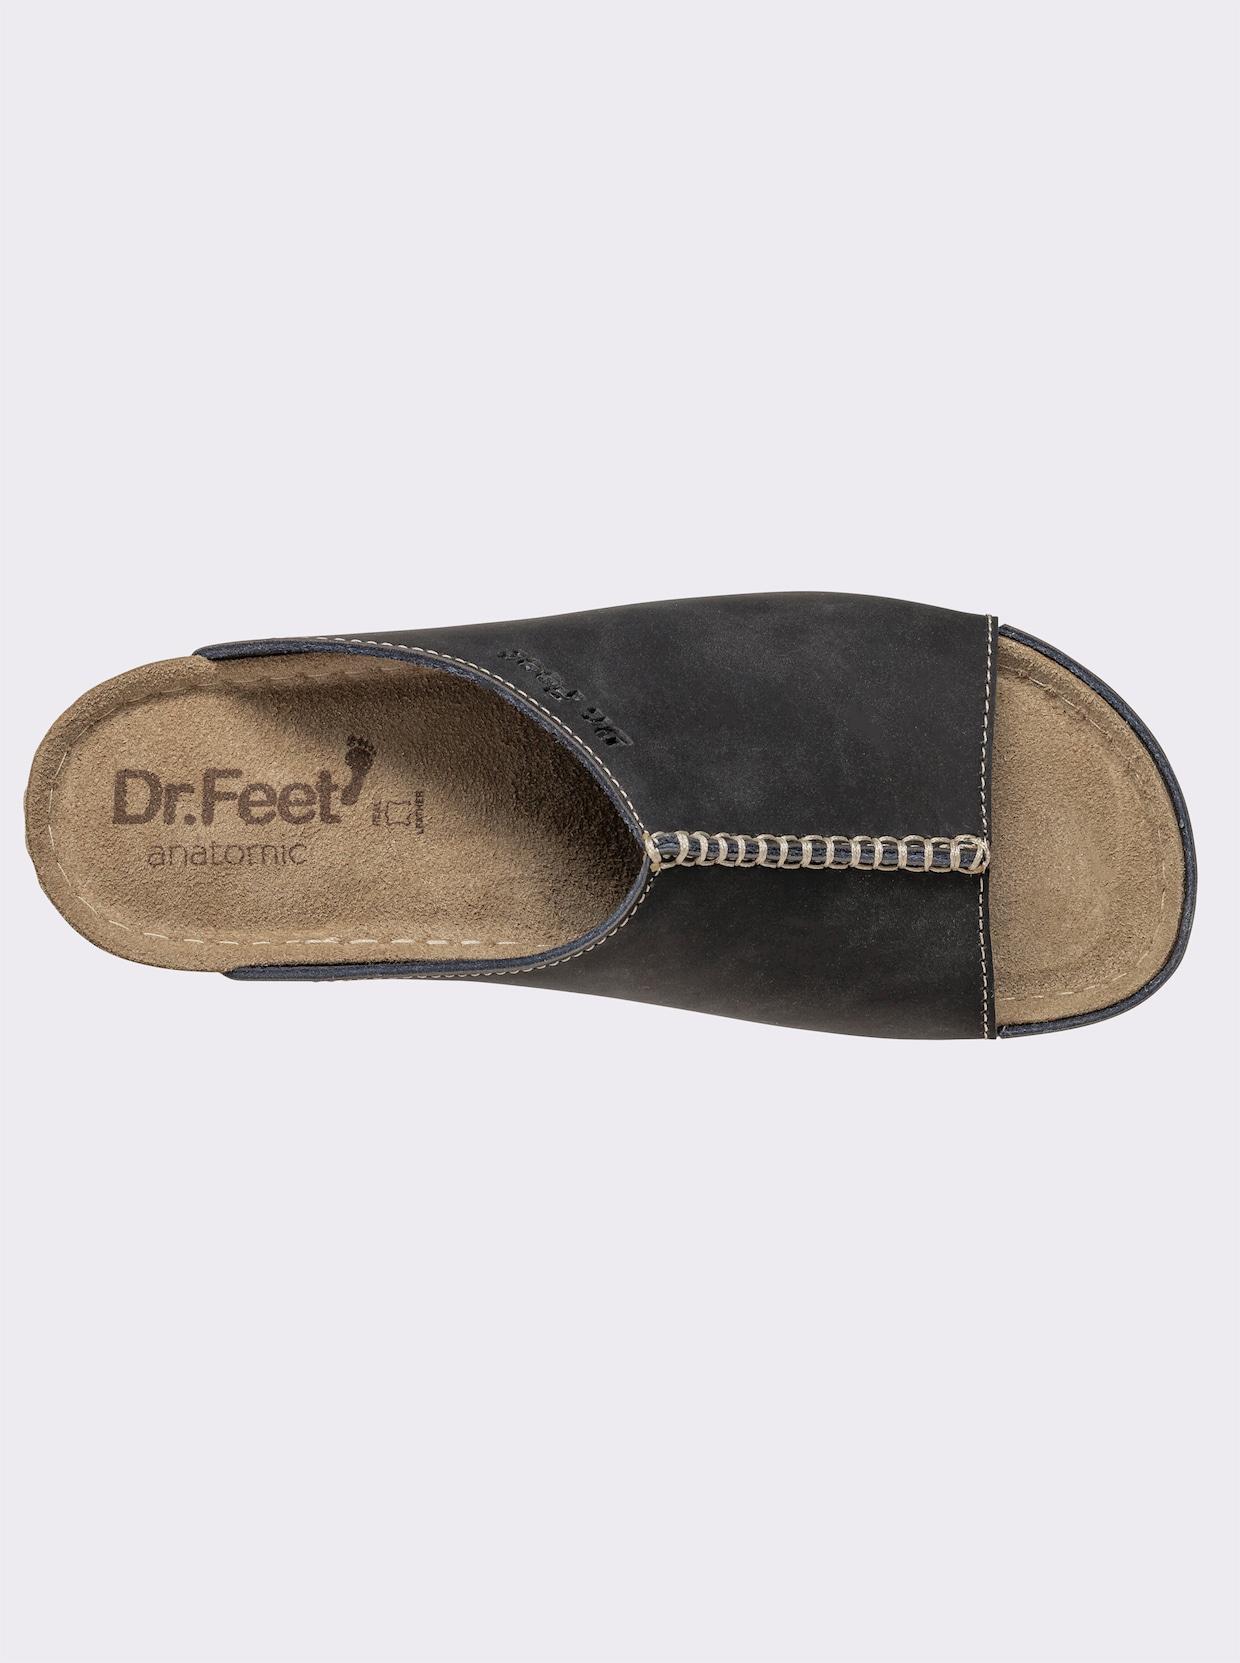 Dr. Feet Chaussons - noir